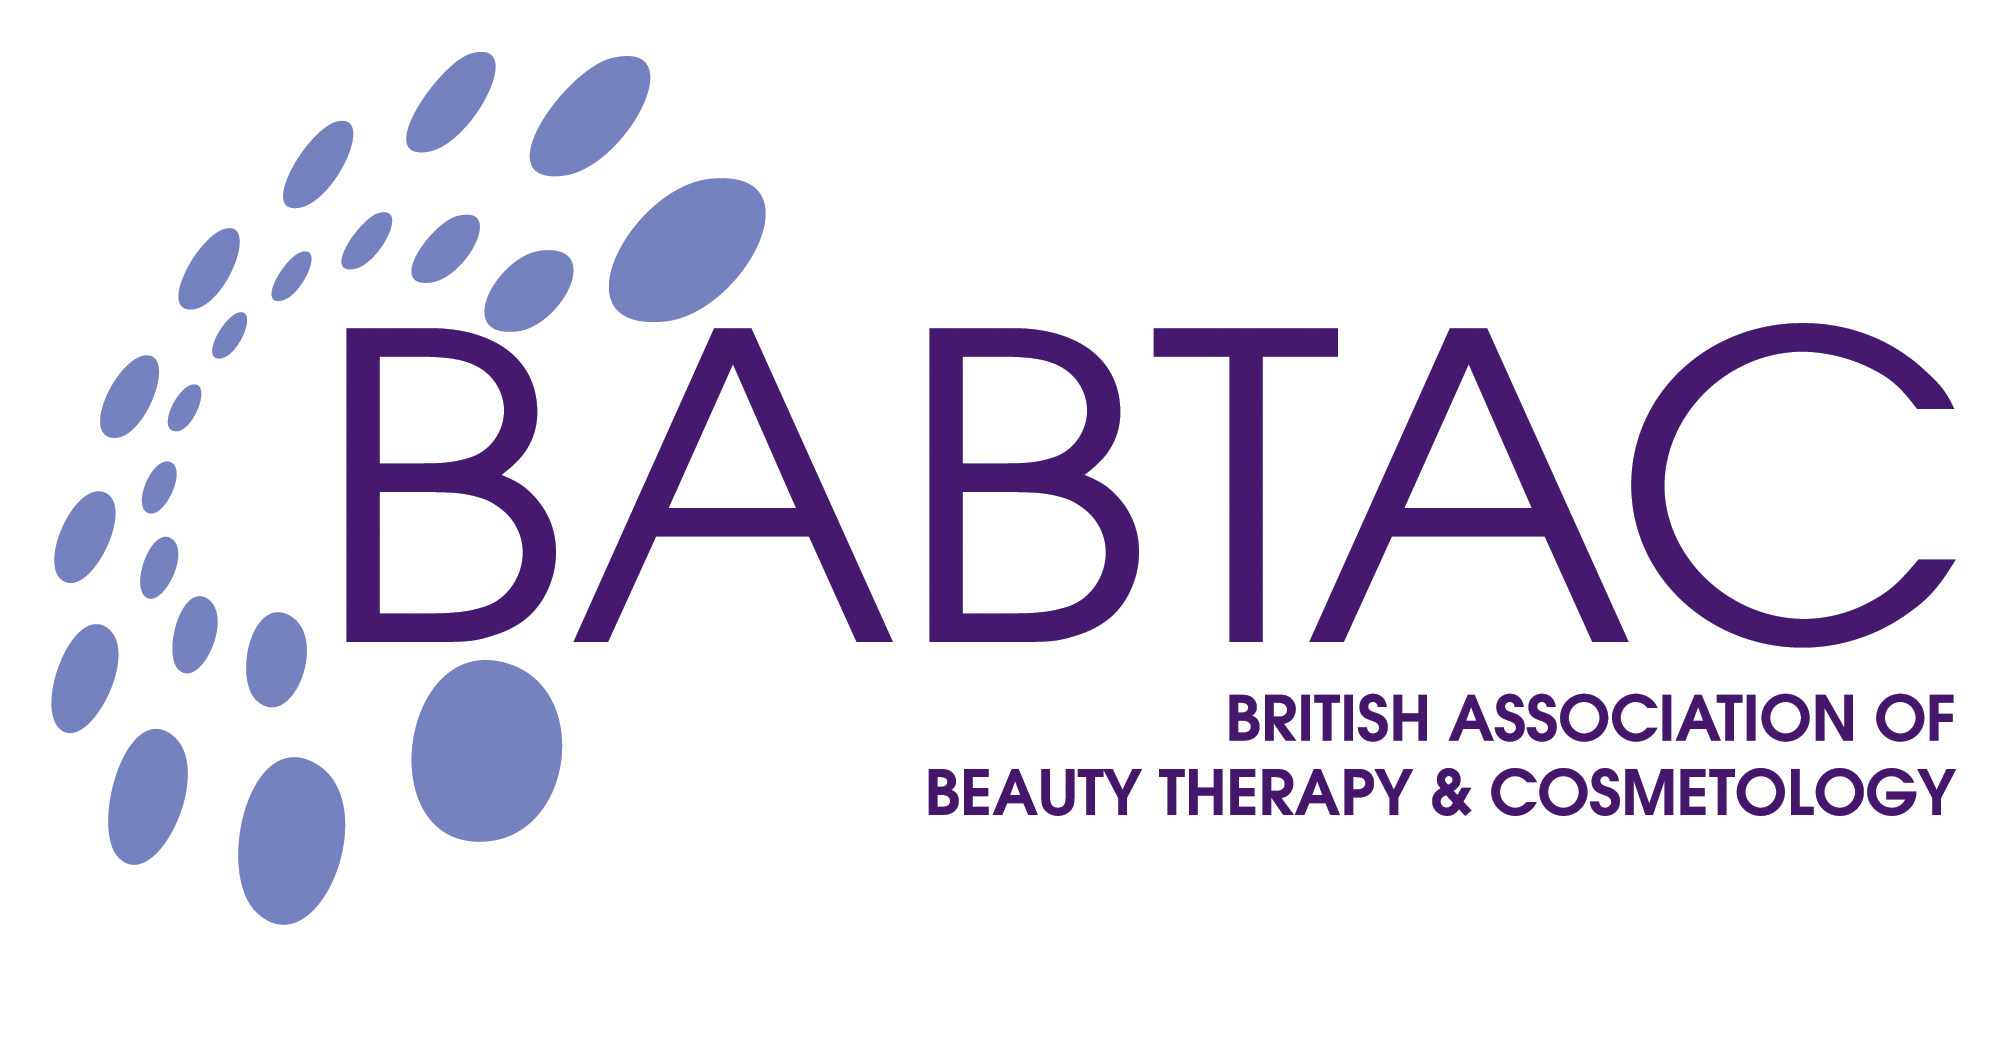 BABTAC logo image